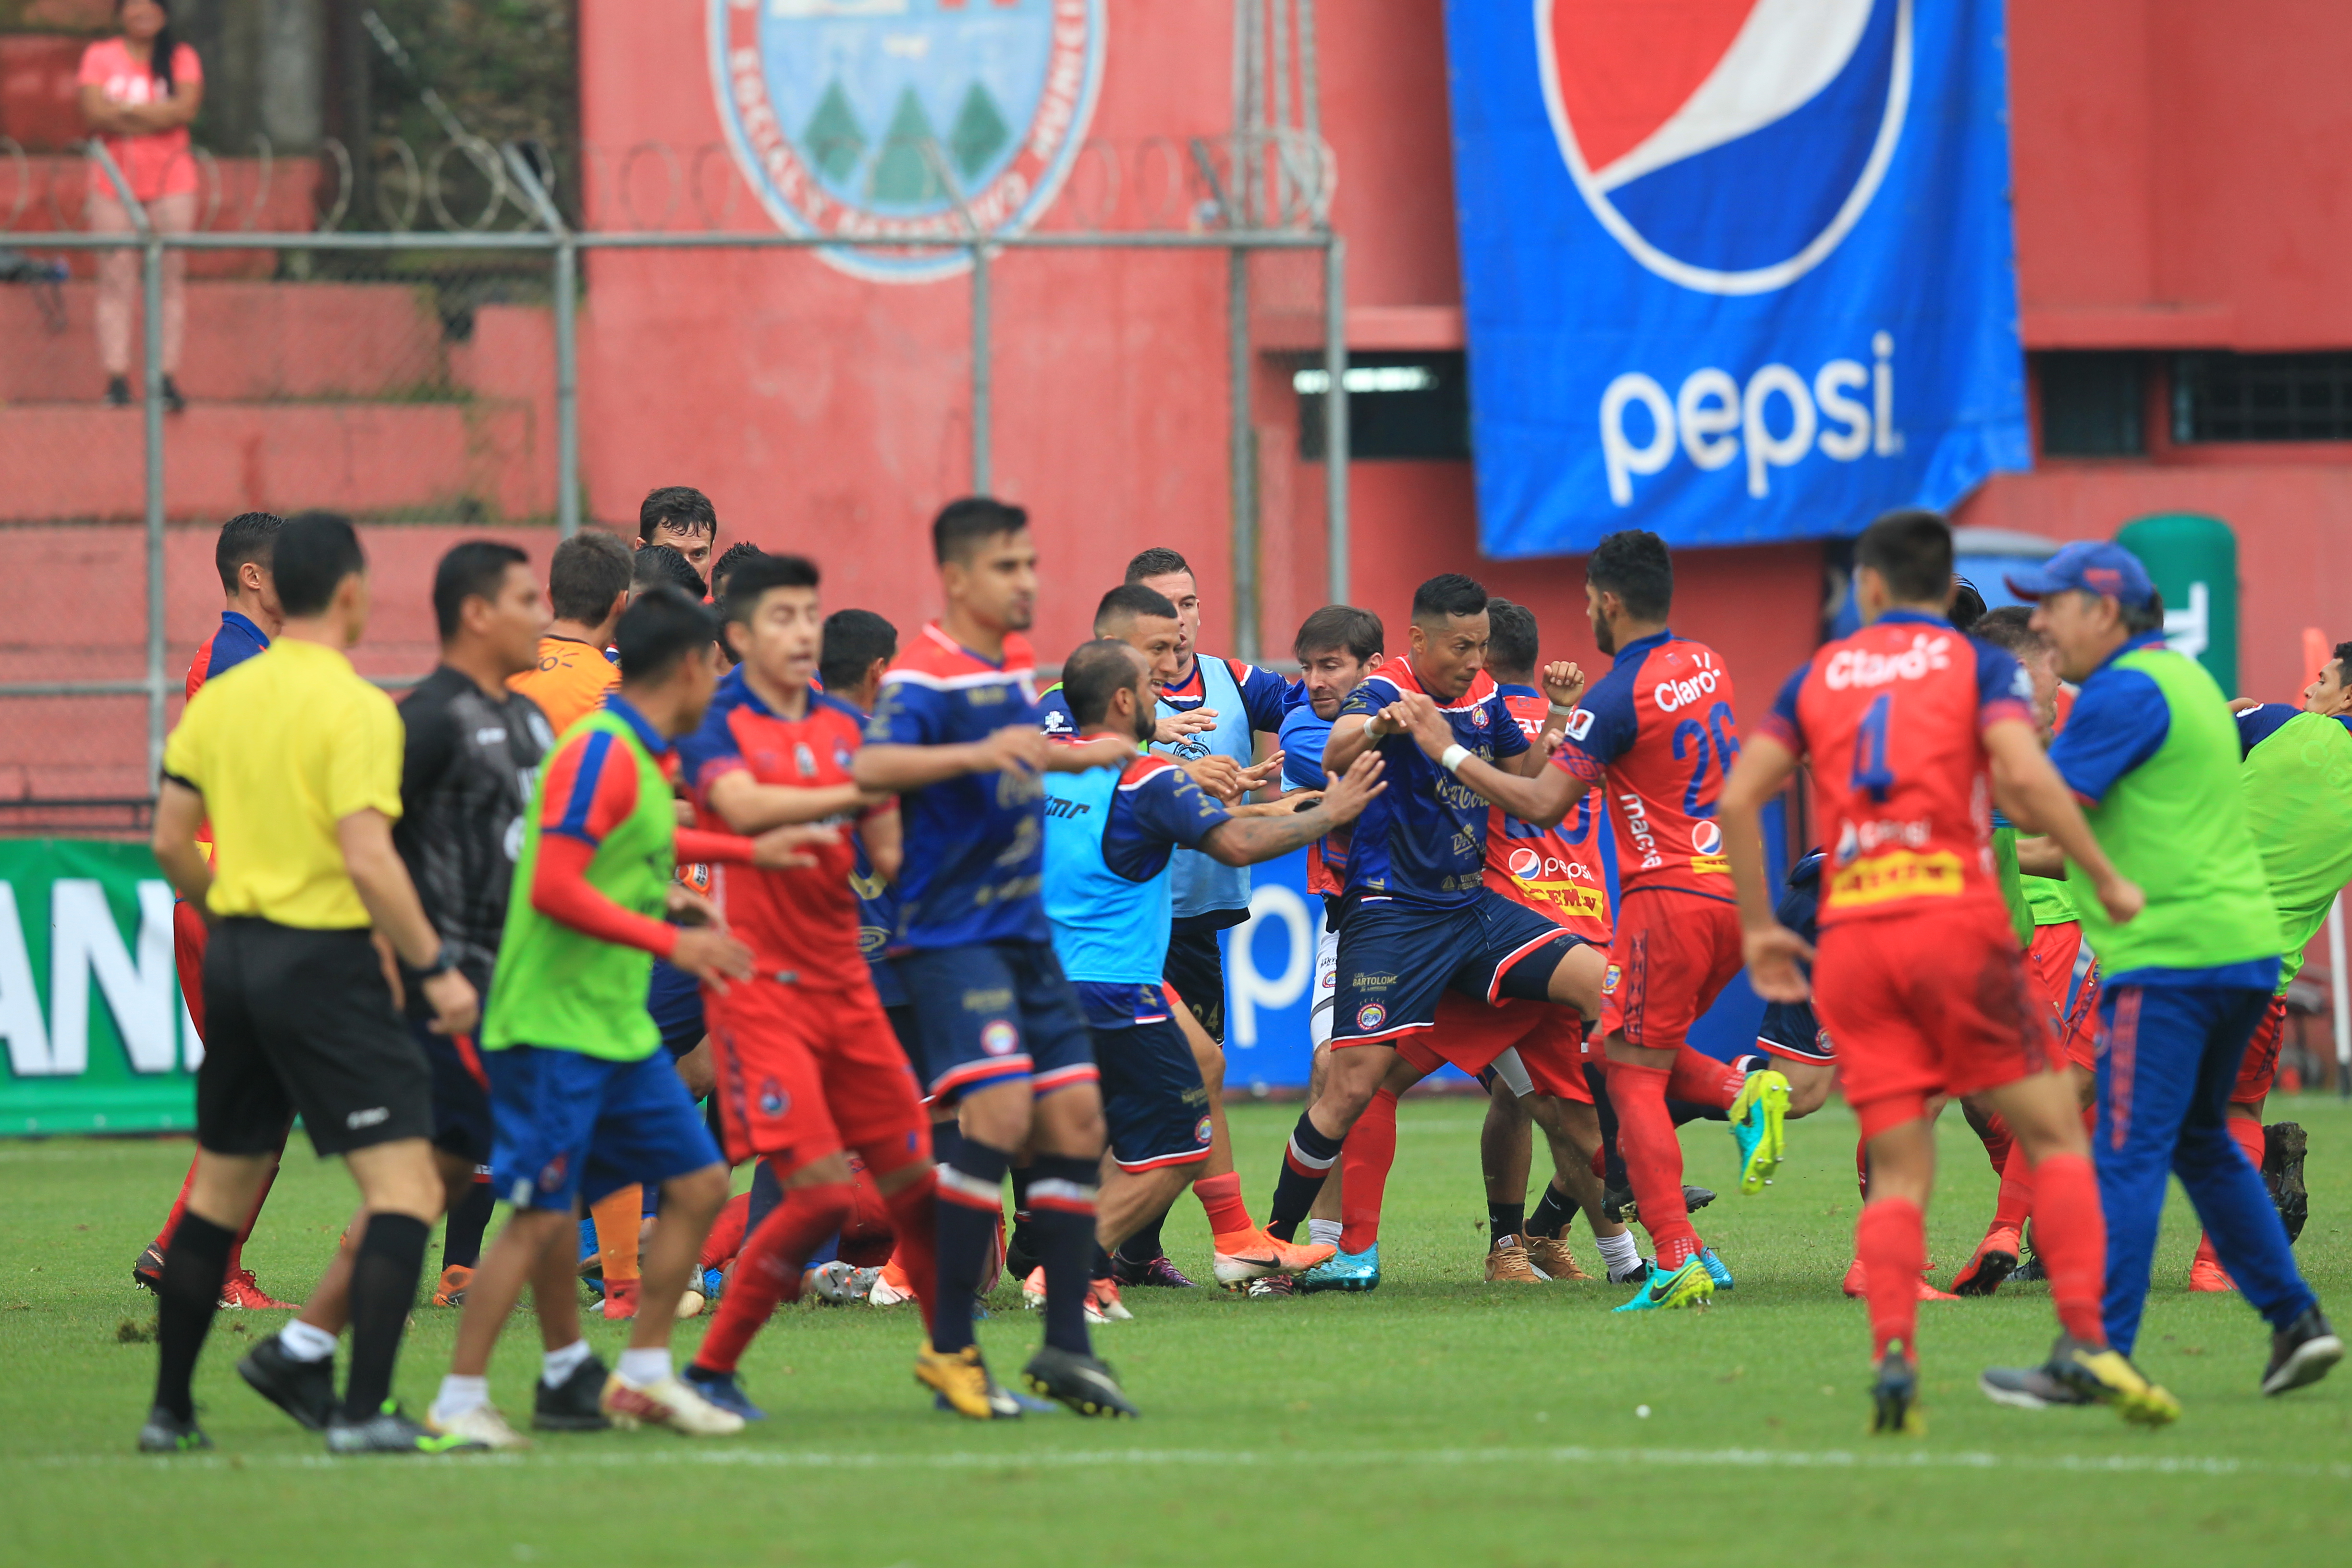 El pleito entre rojos y altenses detuvo el partido durante nueve minutos. (Foto Prensa Libre: Norvin Mendoza) 